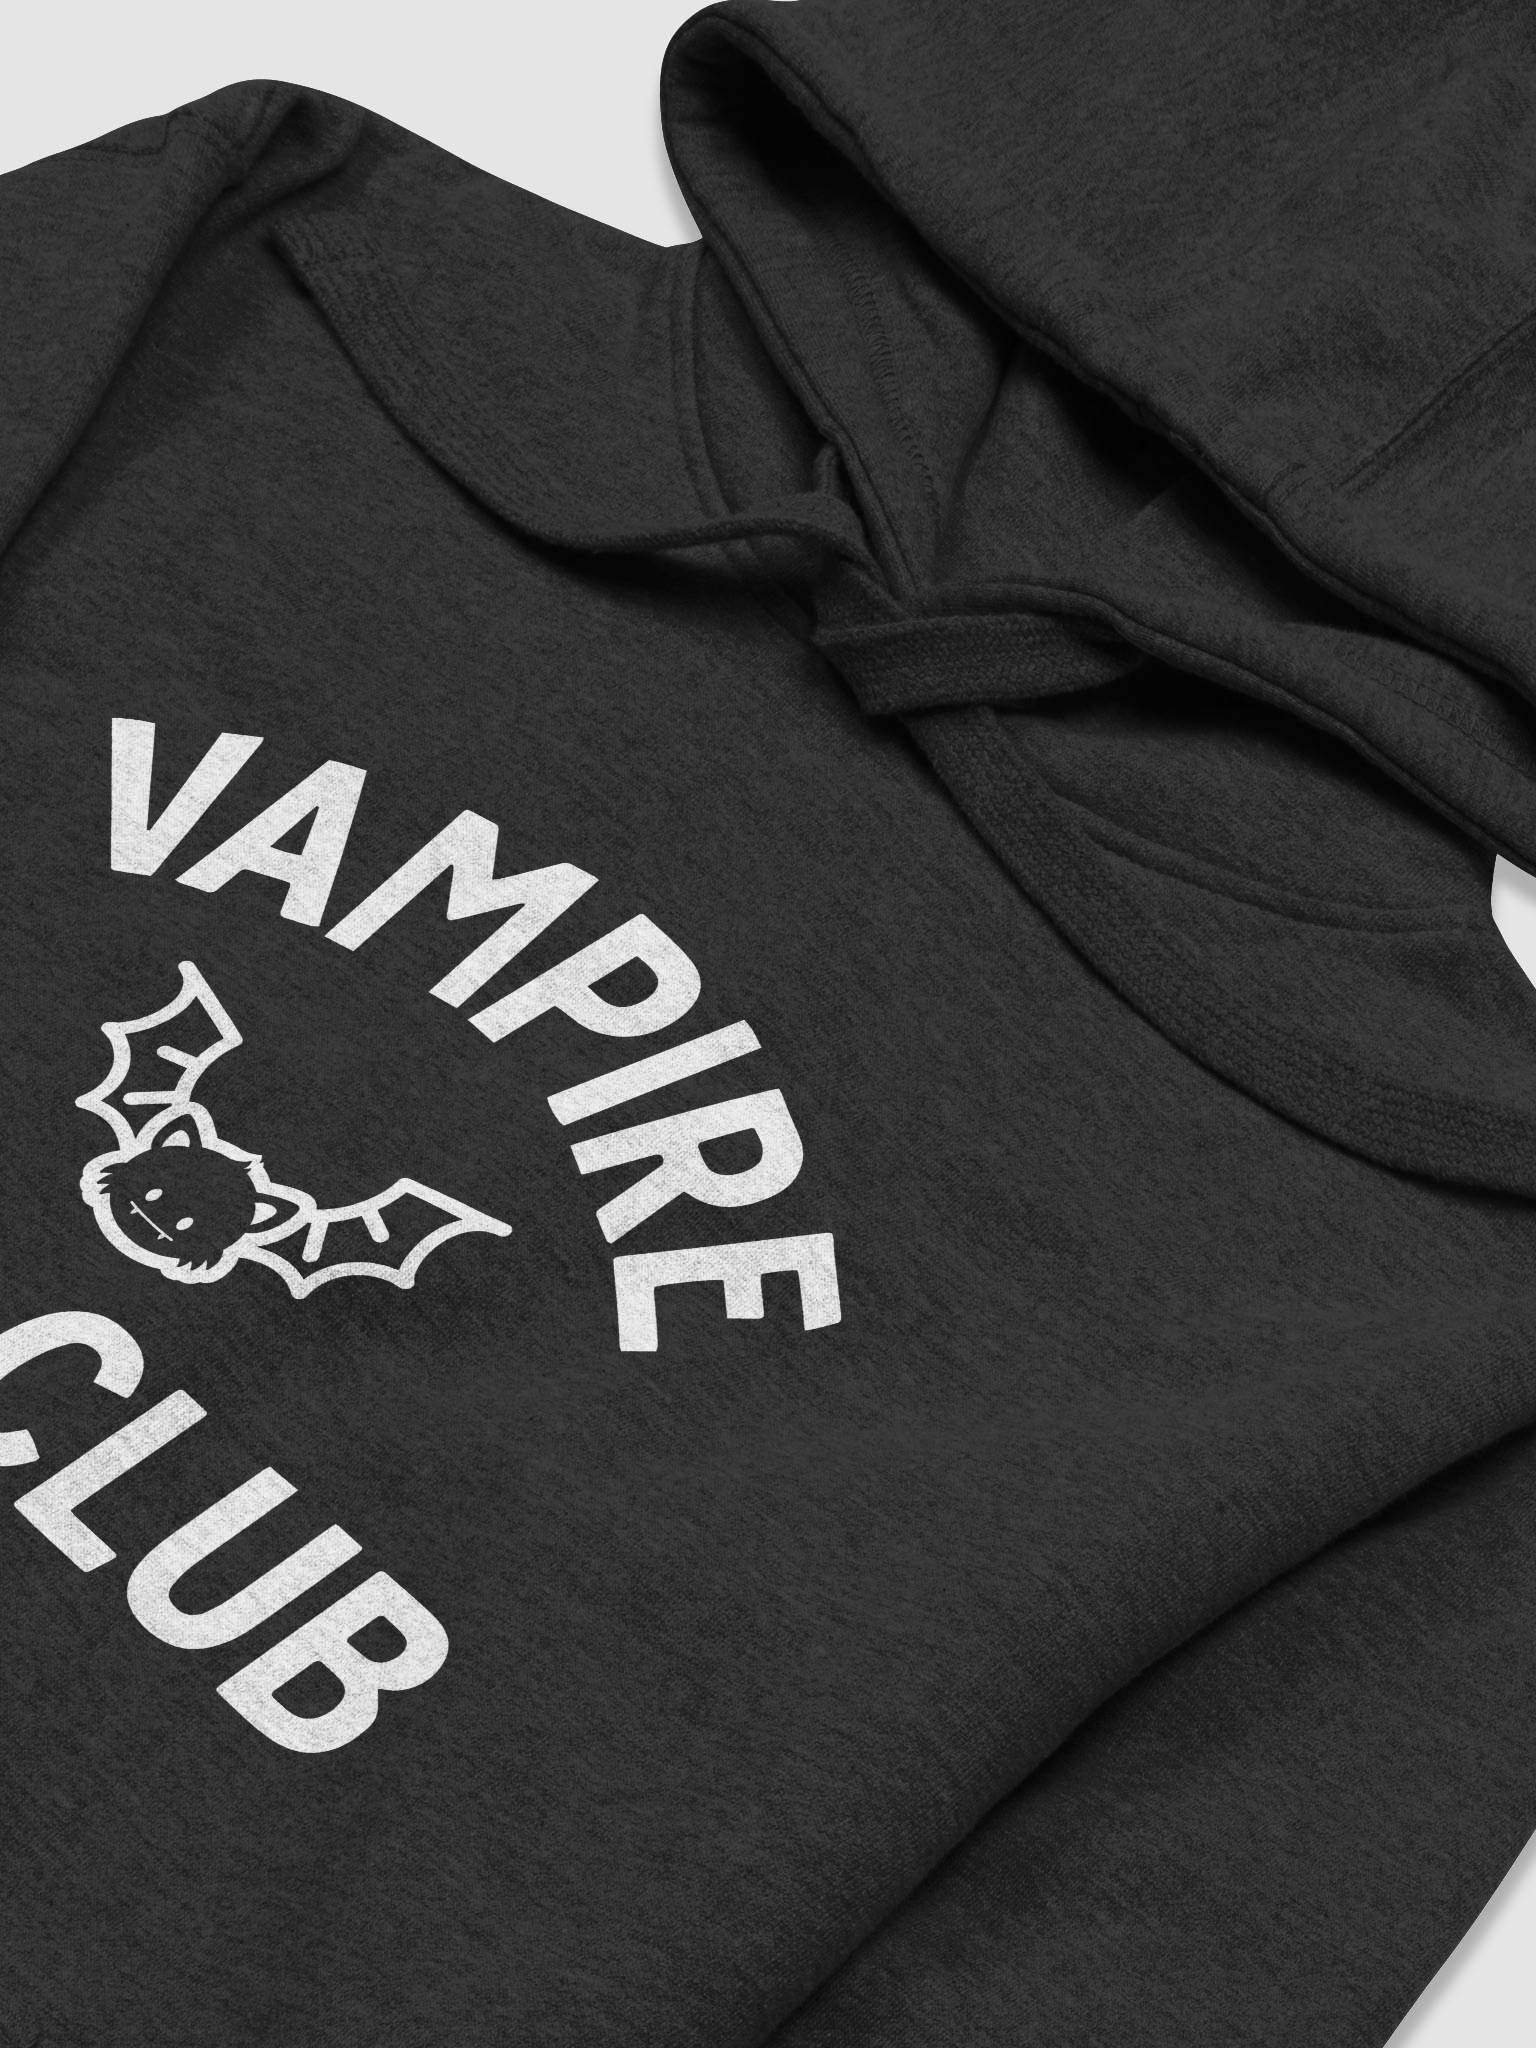 Vampire Cat Club